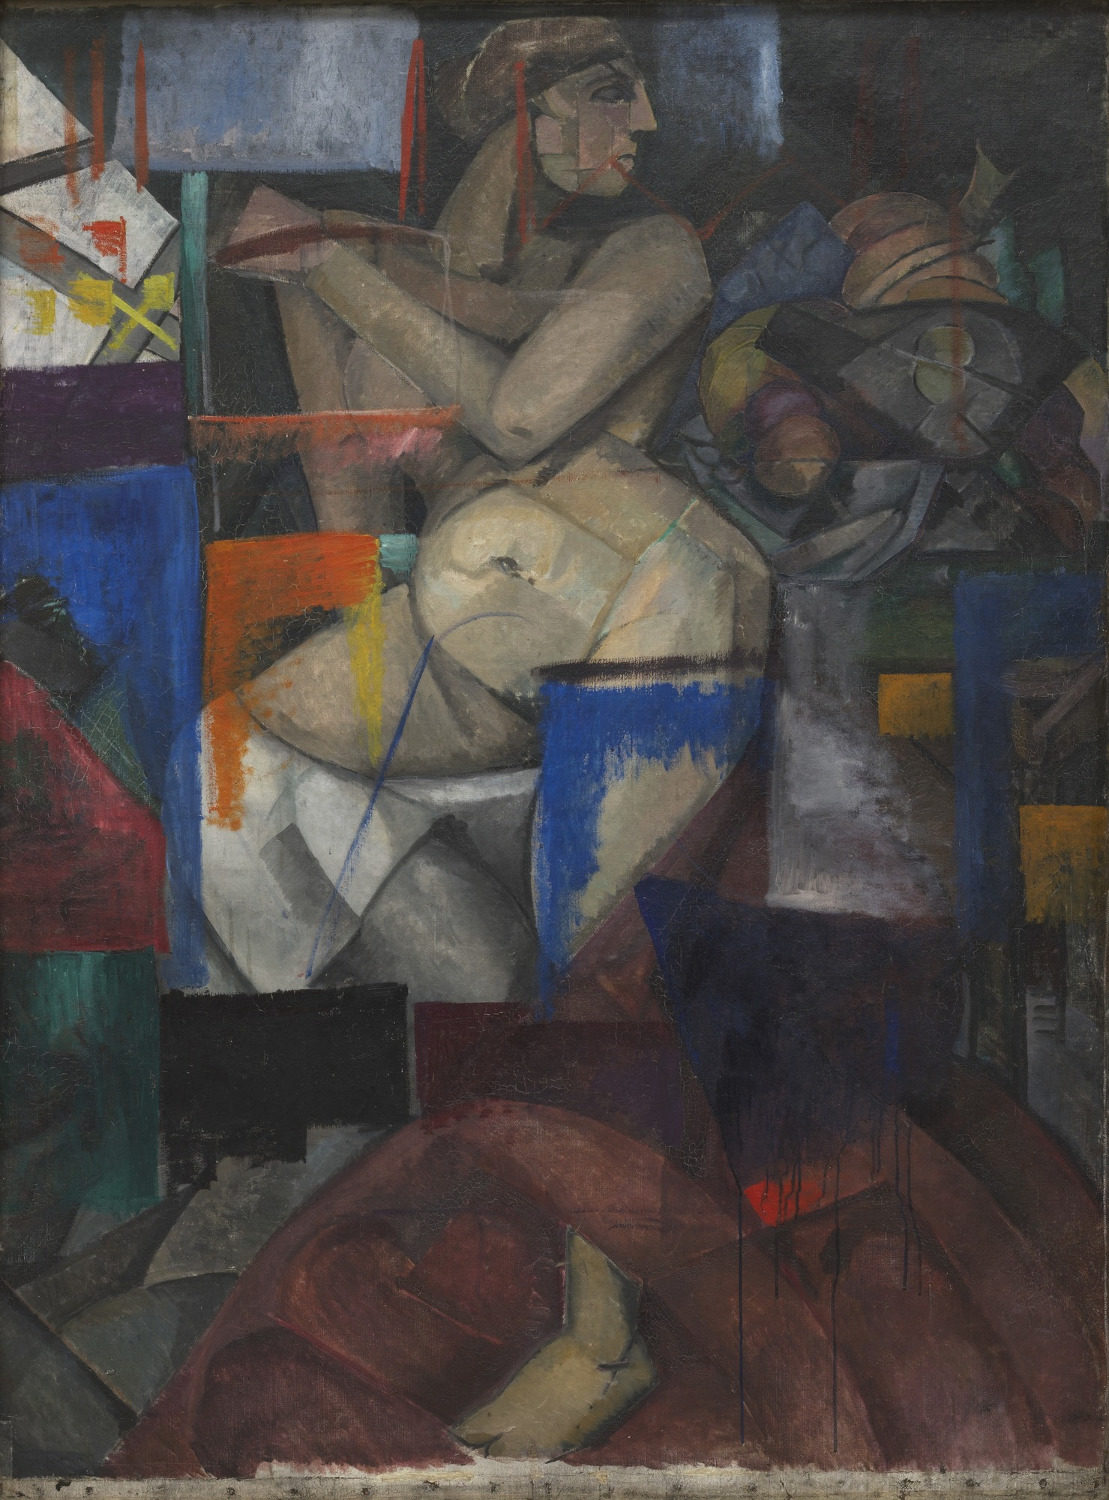 Cubist Nude by Alexandra Exter - c. 1912 - 149 x 108.9 cm Museum of Modern Art